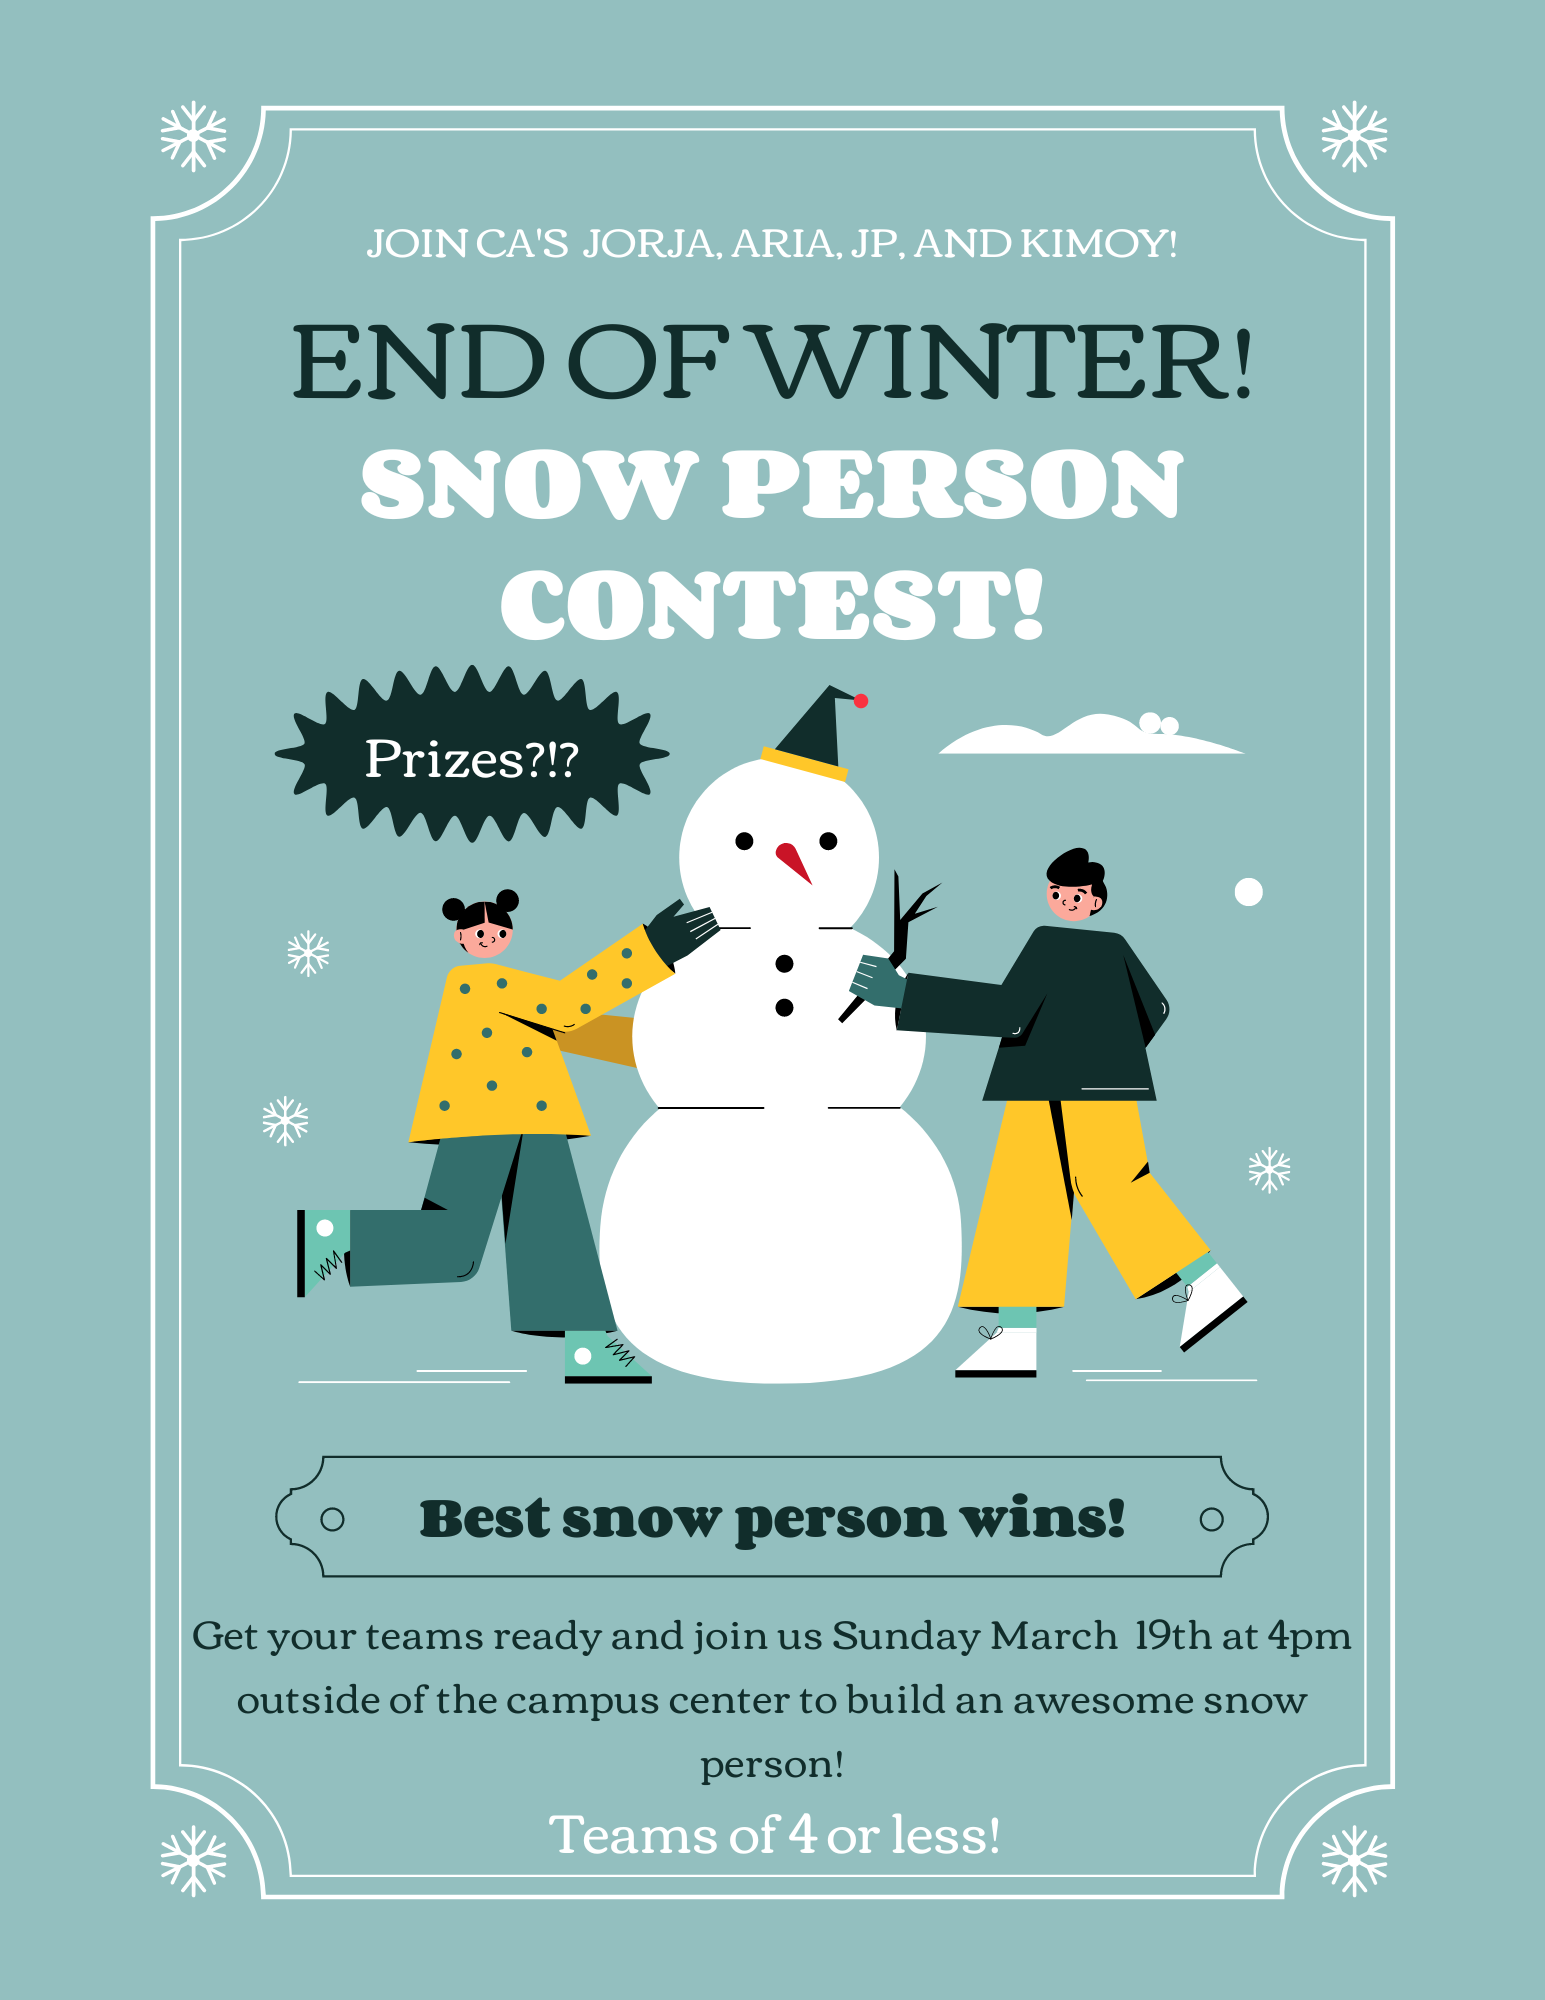 Snow Person Contest!